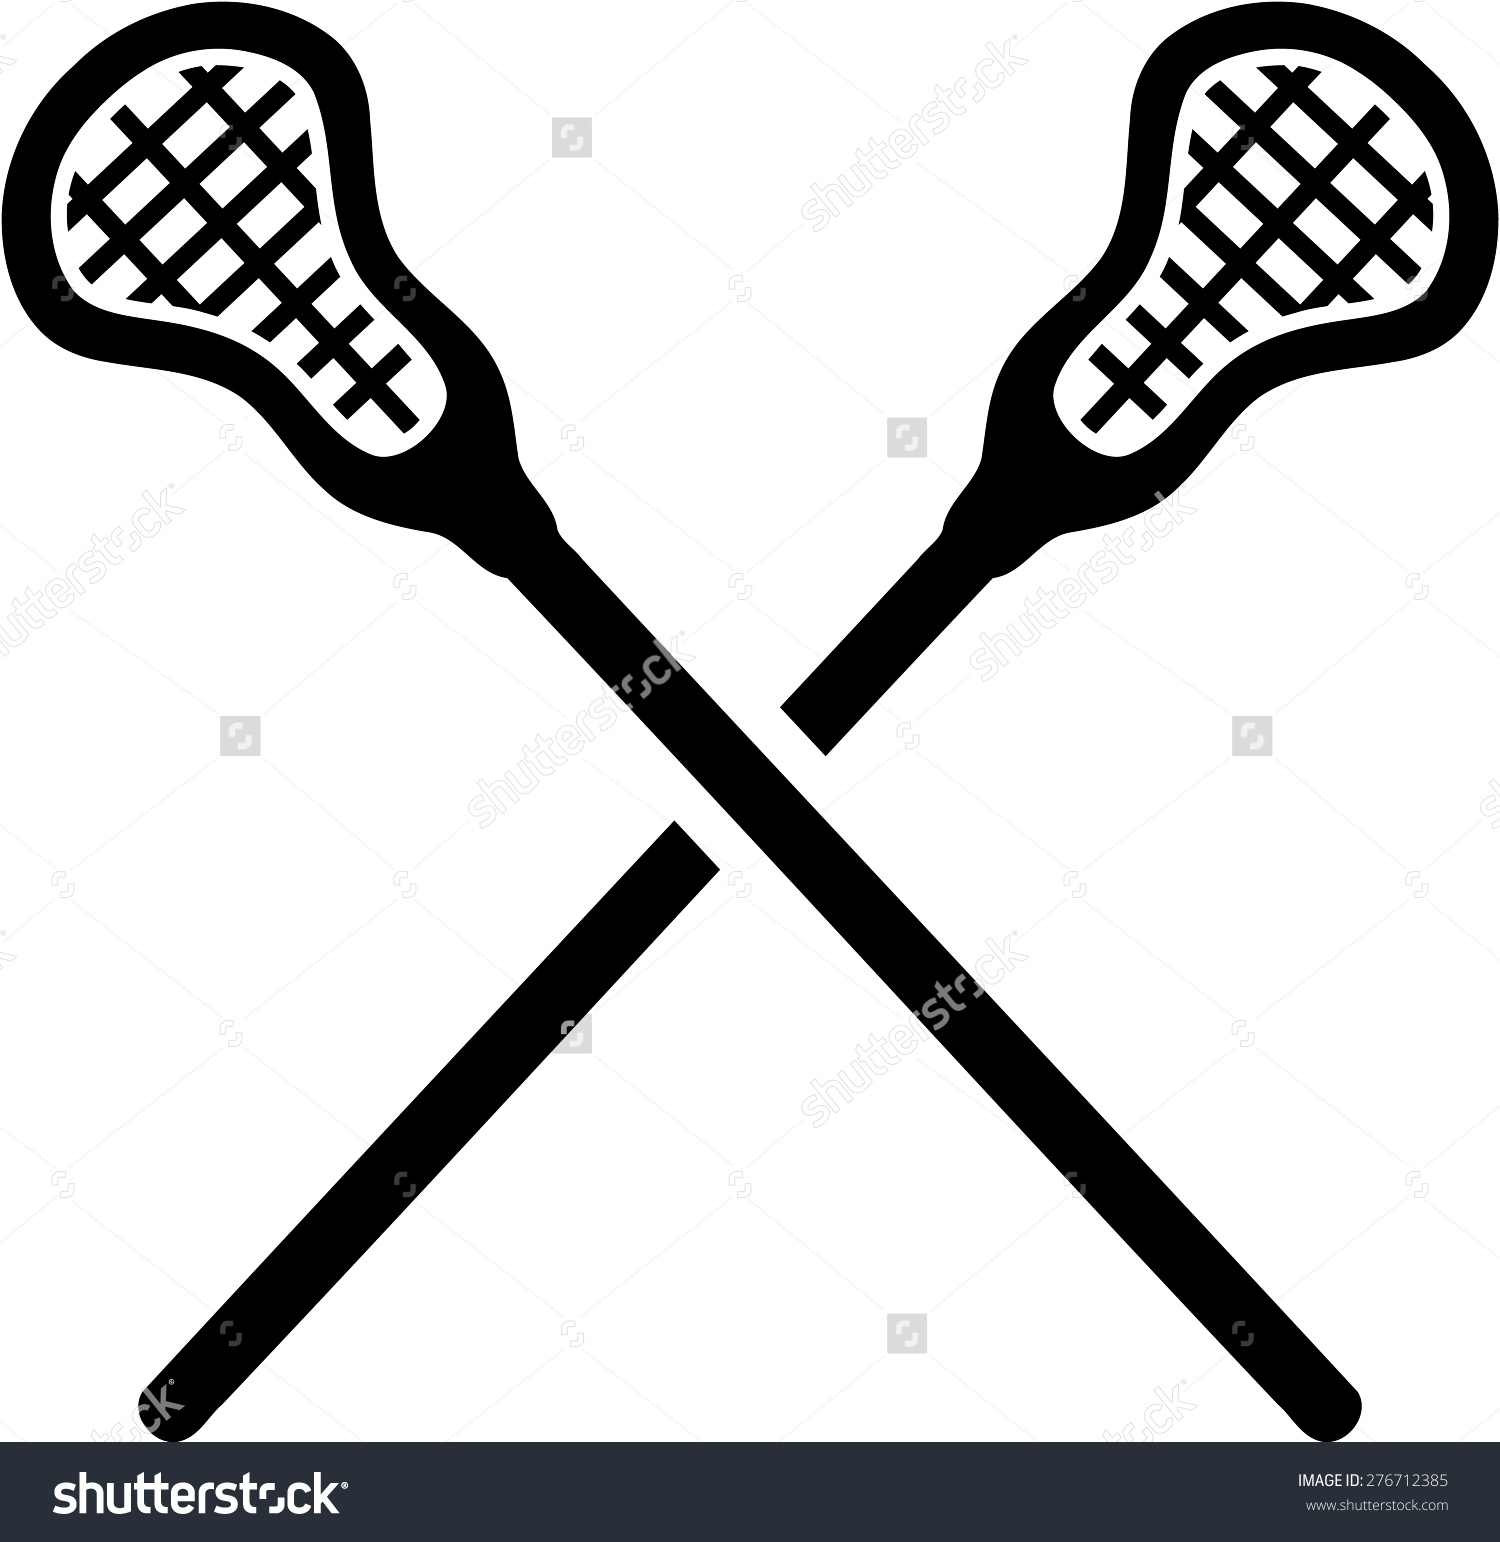 Lacrosse clipart 2 image